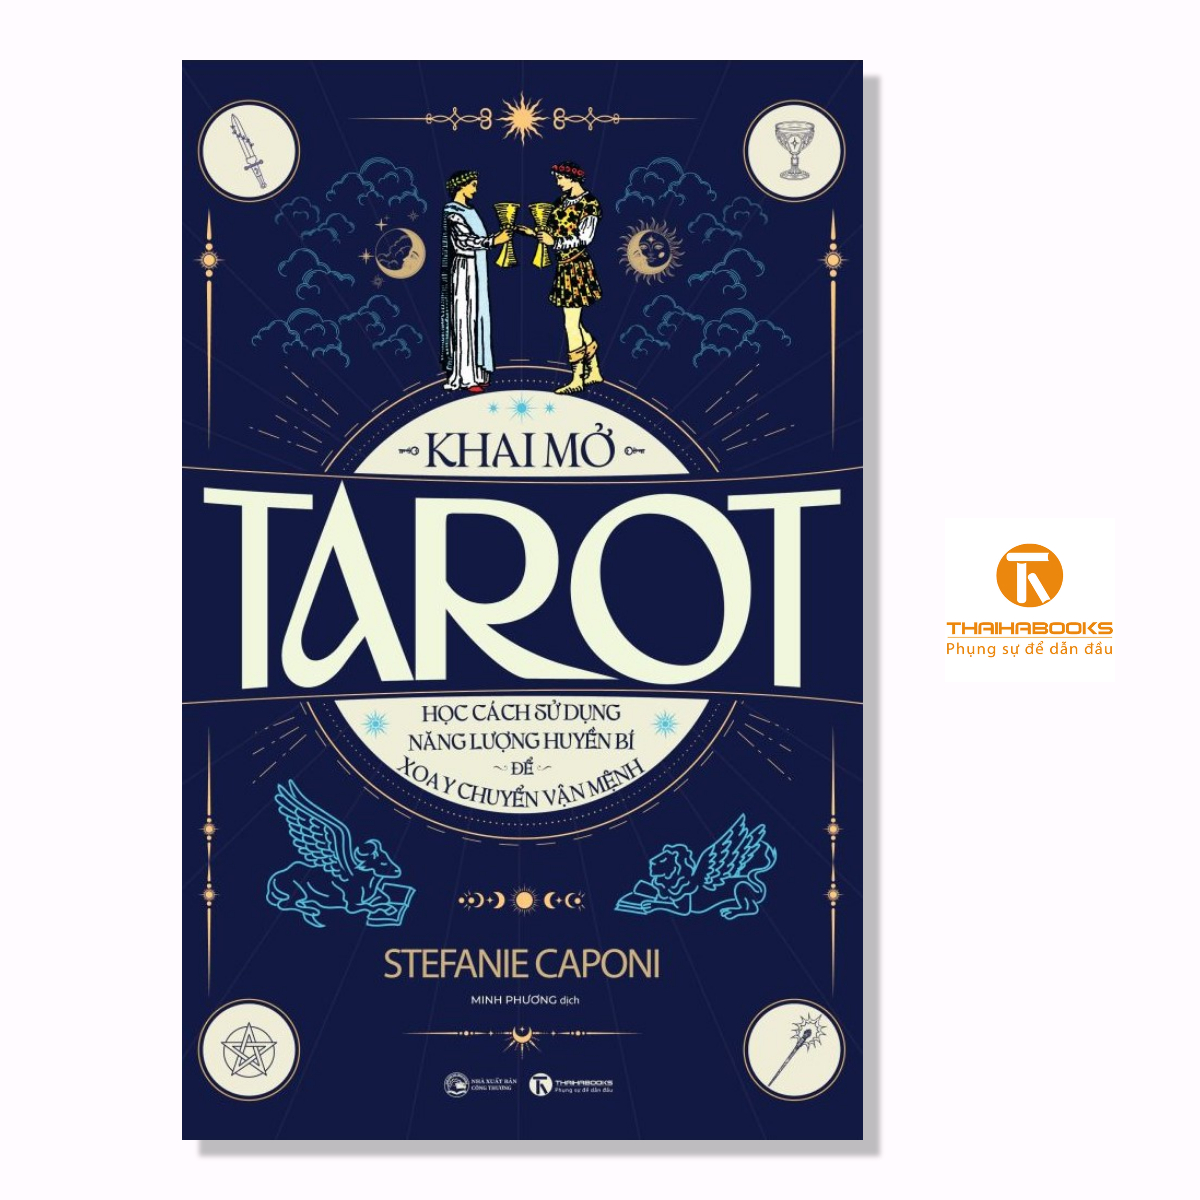 Hình ảnh Sách - Khai mở Tarot - Học cách sử dụng năng lượng huyền bí để xoay chuyển vận mệnh - Thái Hà Books